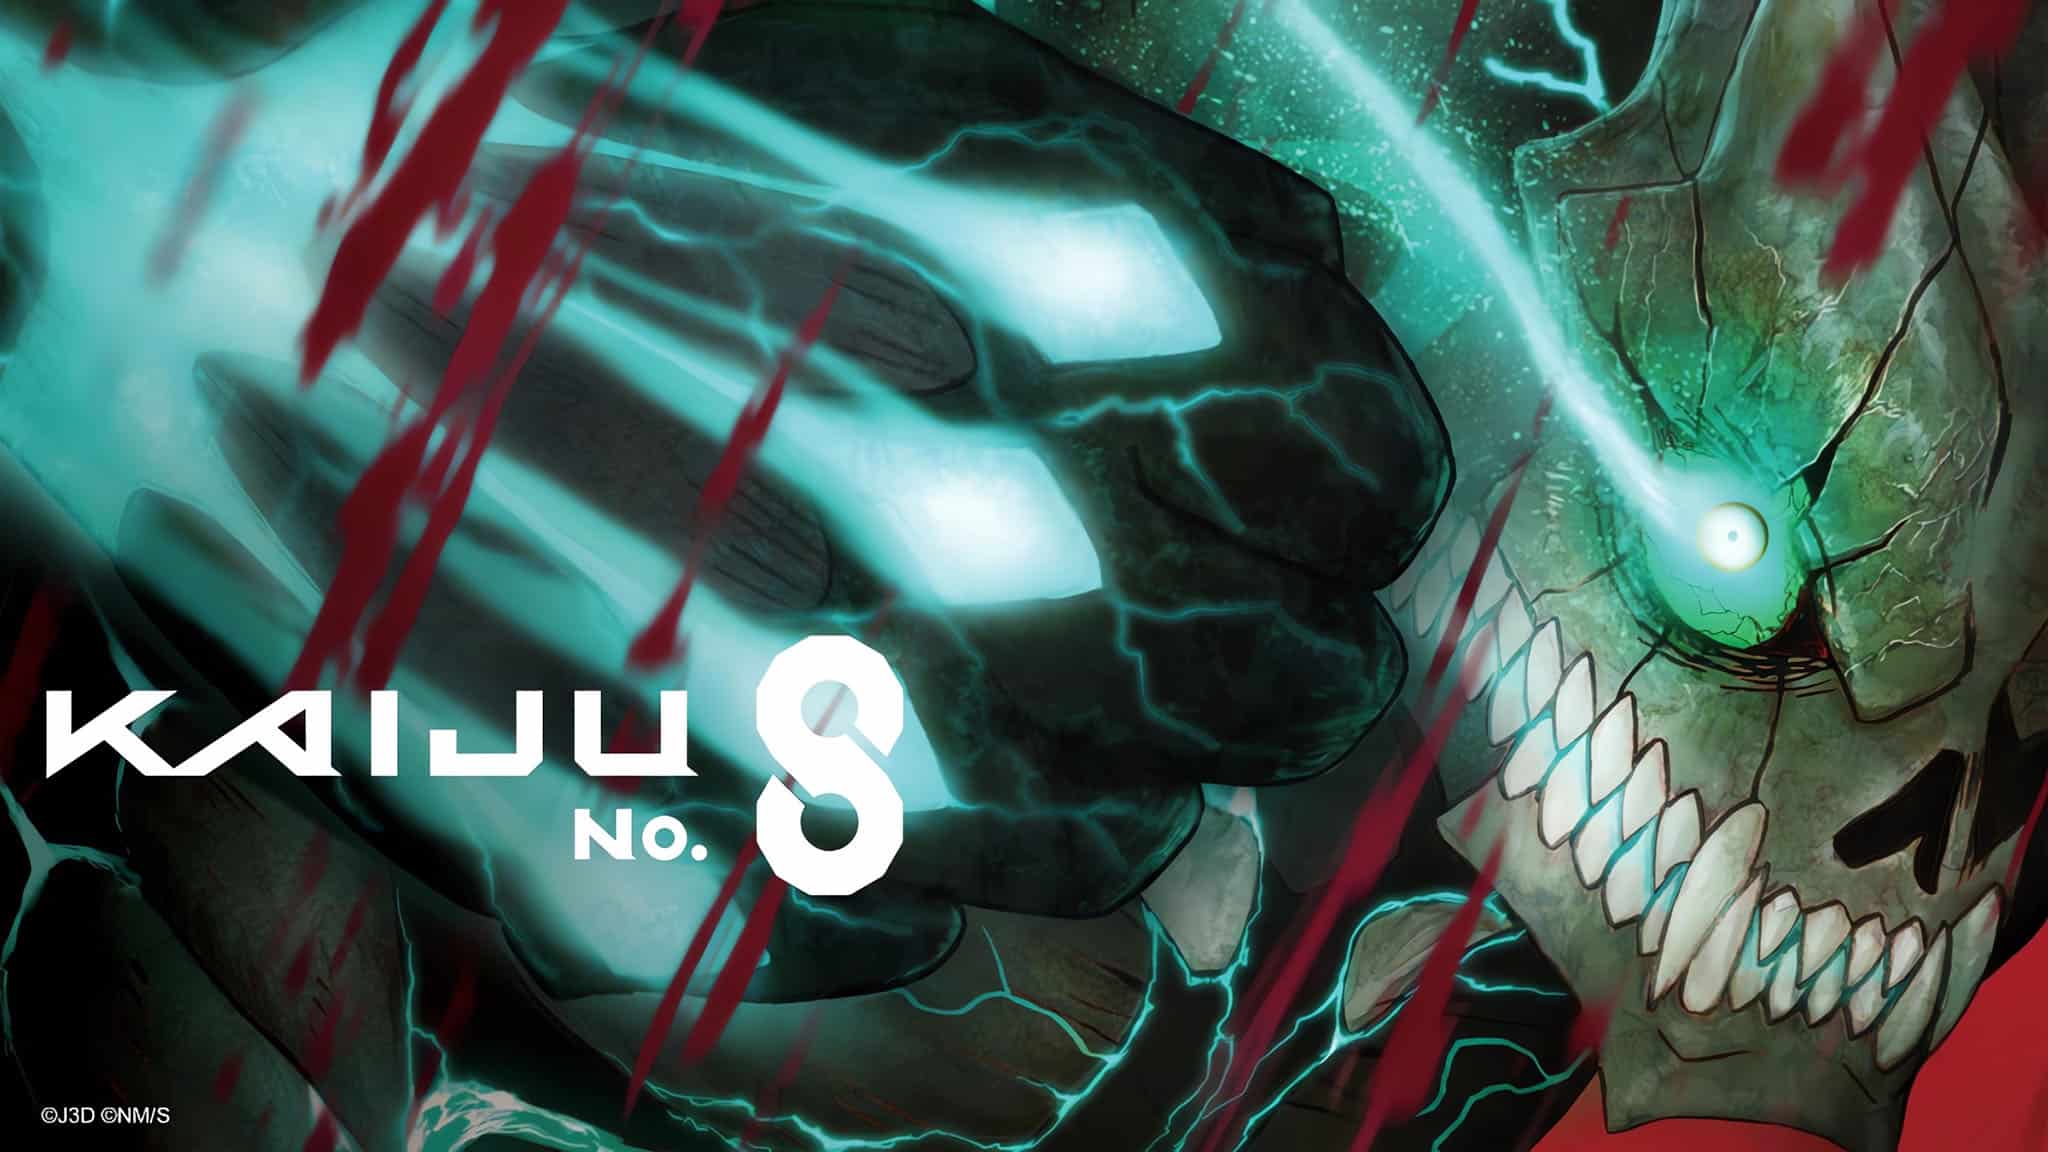 Annonce de la date et heure de sortie en streaming VOSTFR et VF de l'anime Kaiju No. 8 épisode 1 sur Crunchyroll.